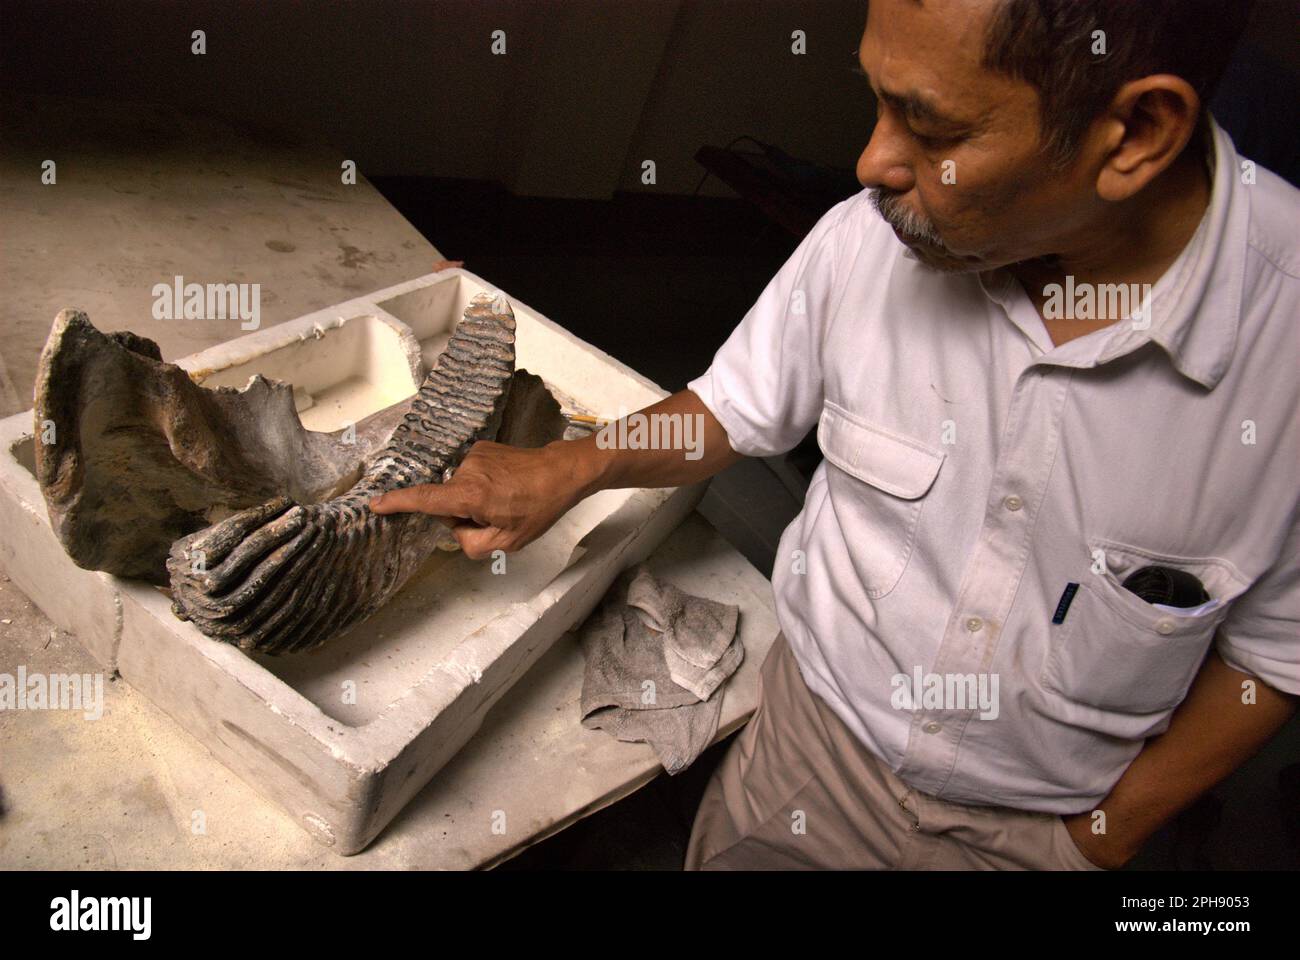 Fachroel Aziz, profesor de investigación de paleontología de vertebrados, es fotografiado en la oficina de Investigación de Vertebrados, Agencia Geológica, Ministerio de Energía y Recursos Minerales de Indonesia, que se encuentra en Bandung, Java Occidental, Indonesia. Foto de stock